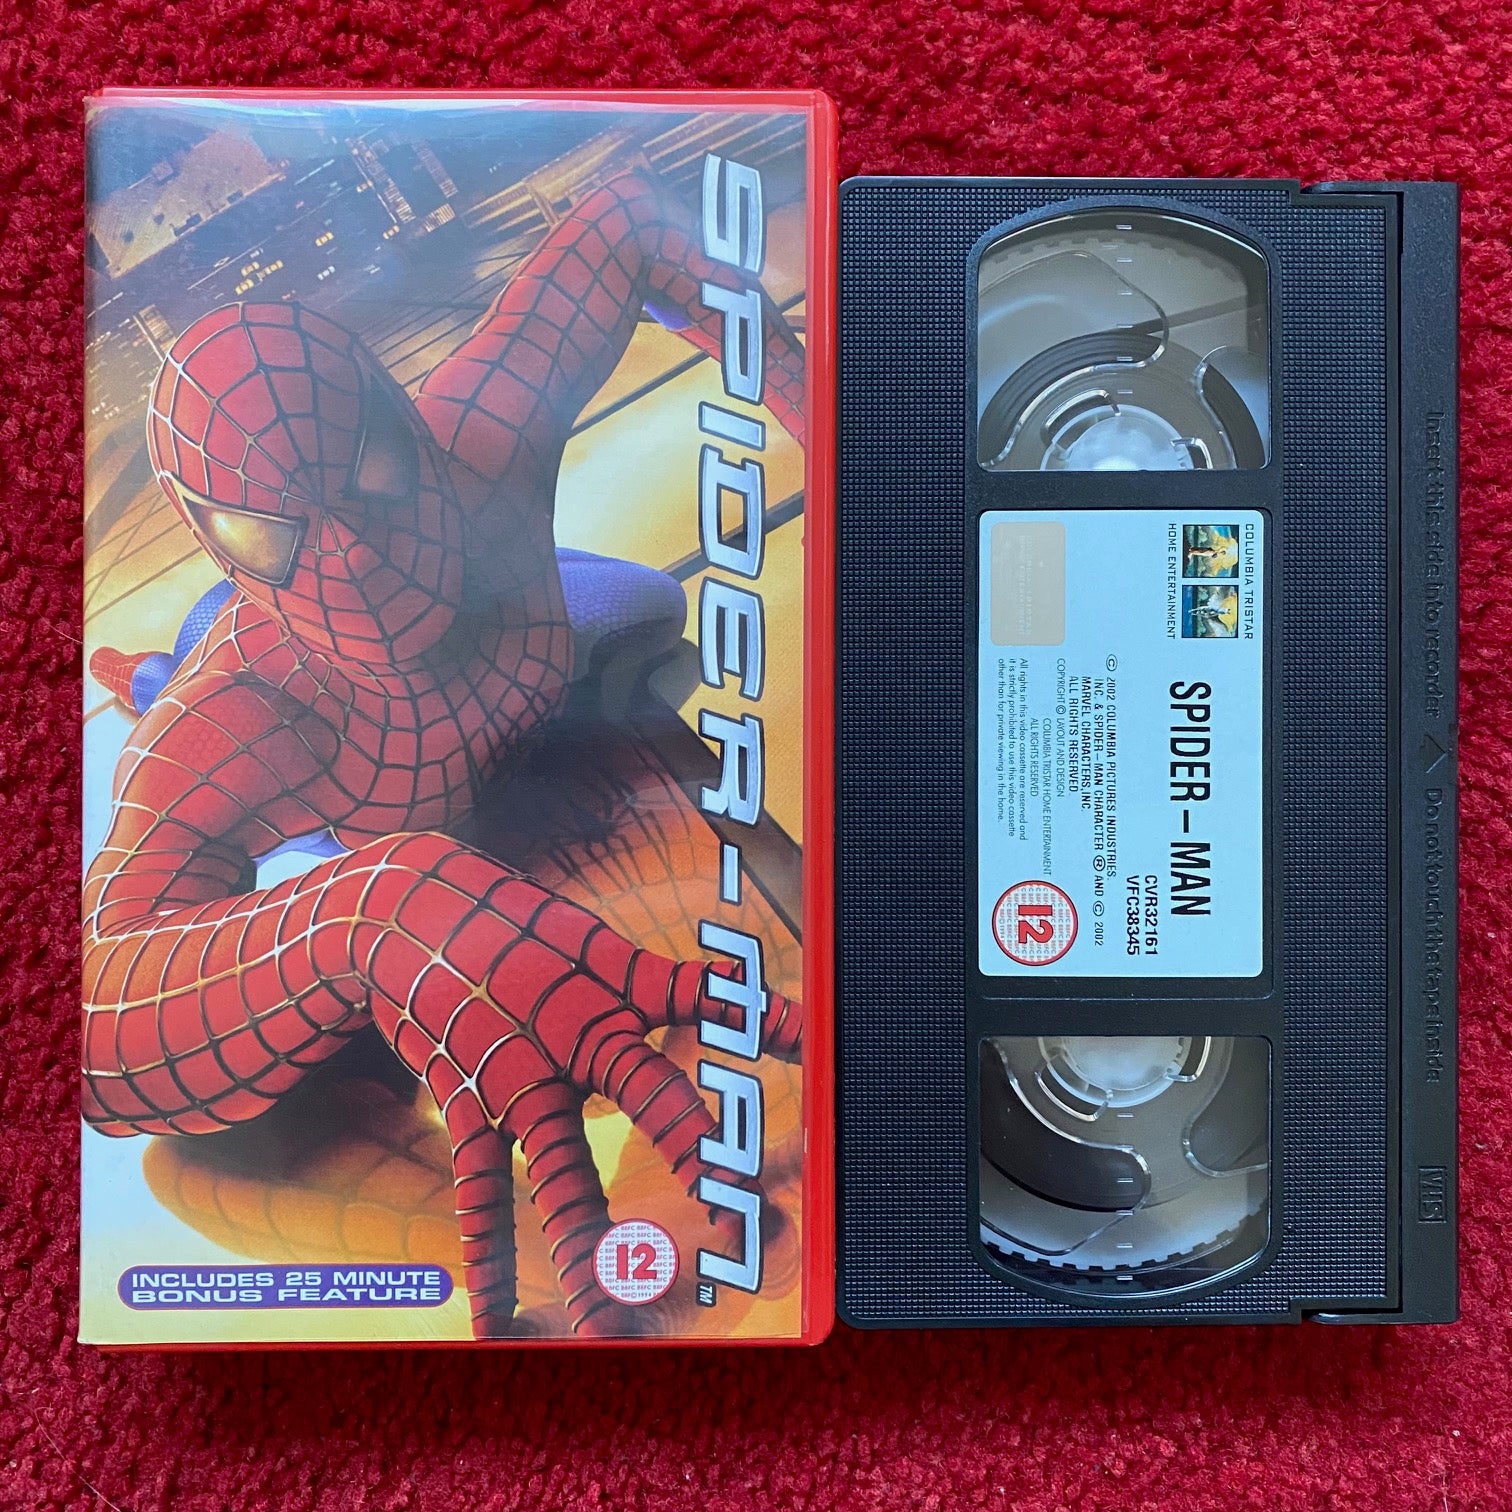 Spider-Man (VHS, 2002) for sale online